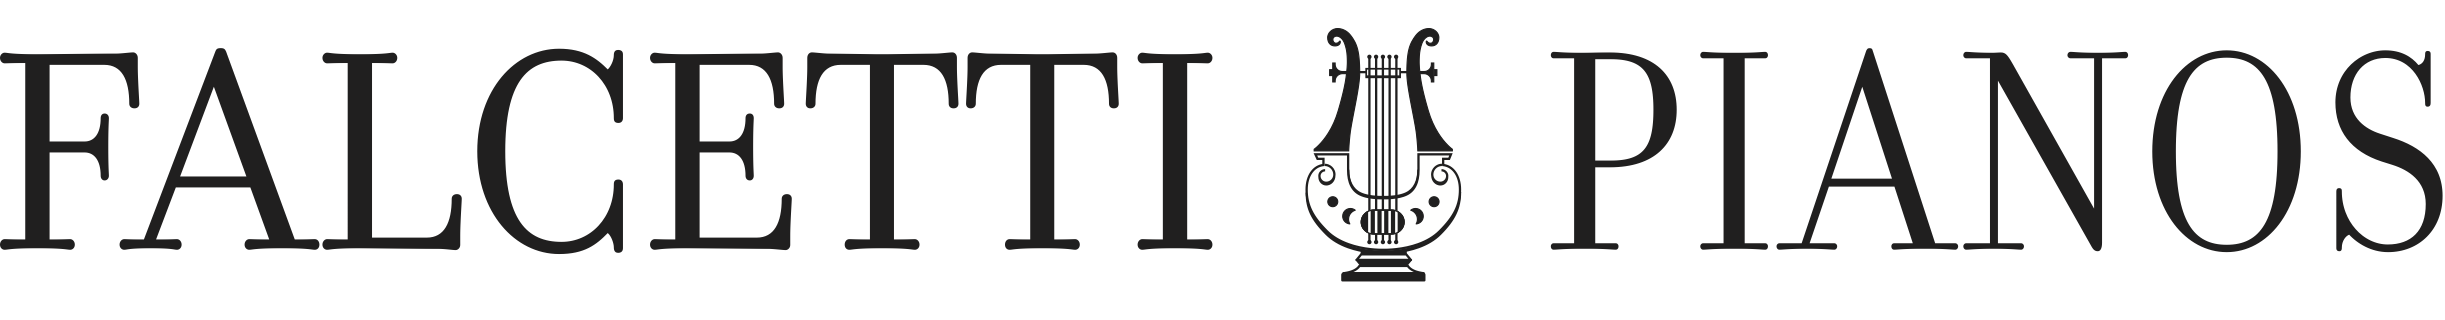 falcetti pianos logo